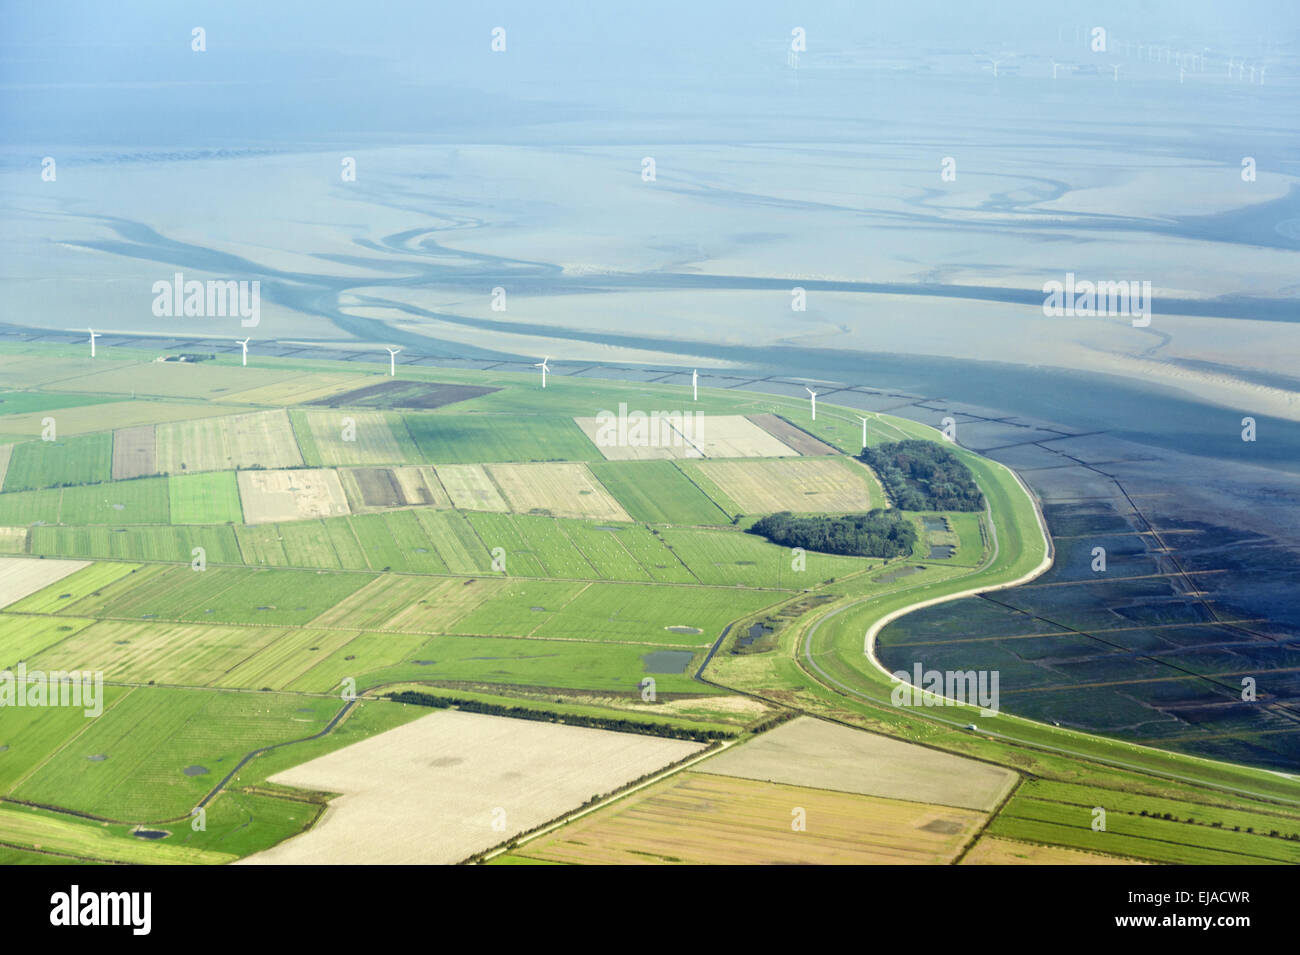 Luftbild vom Wattenmeer bei Föhr Foto de stock